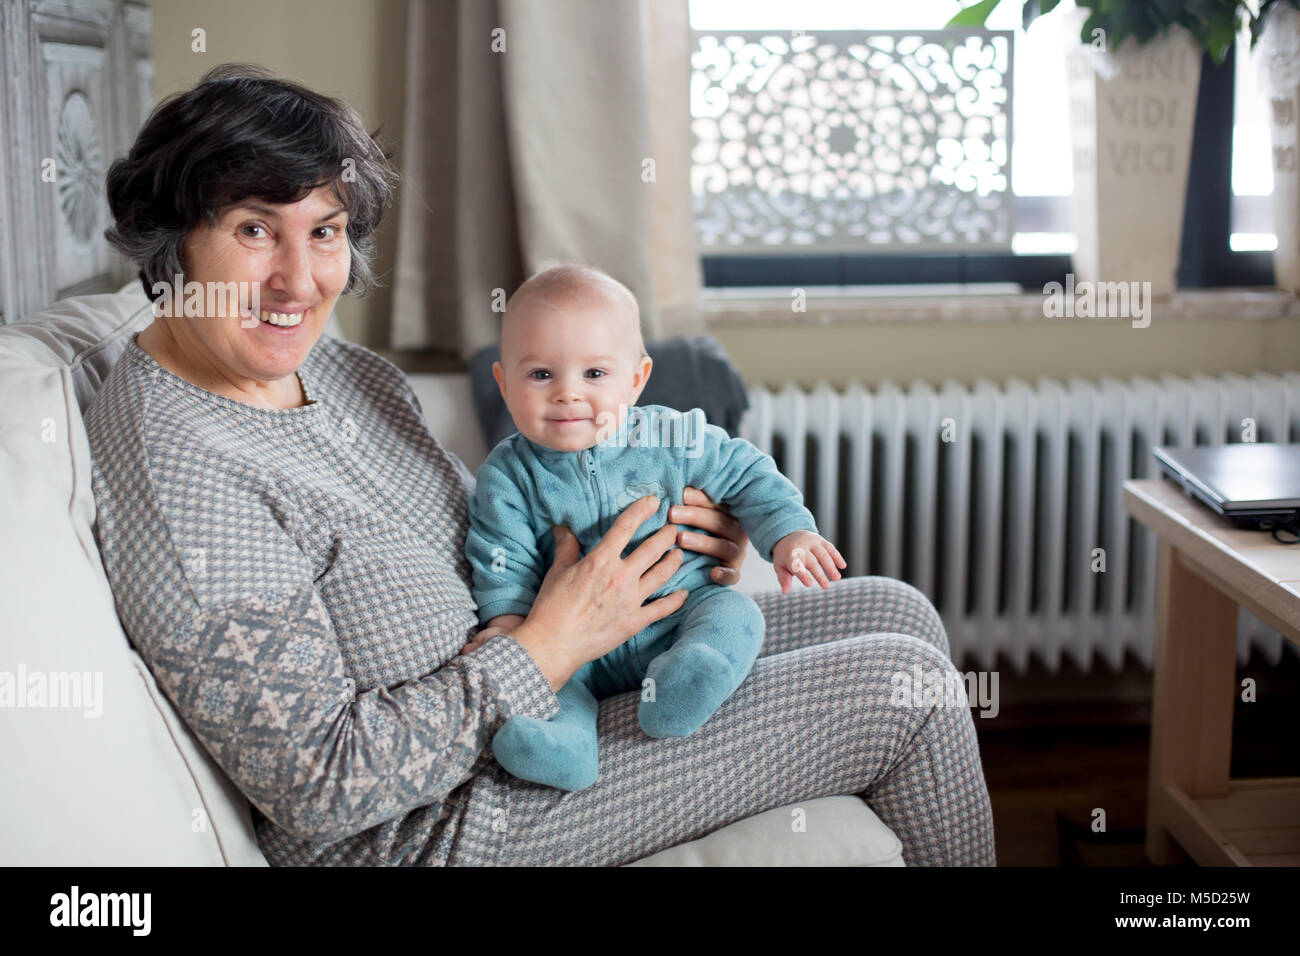 Grand-mère tenant peu bébé garçon, assis dans un salon confortable avec beaucoup de lumière naturelle Banque D'Images